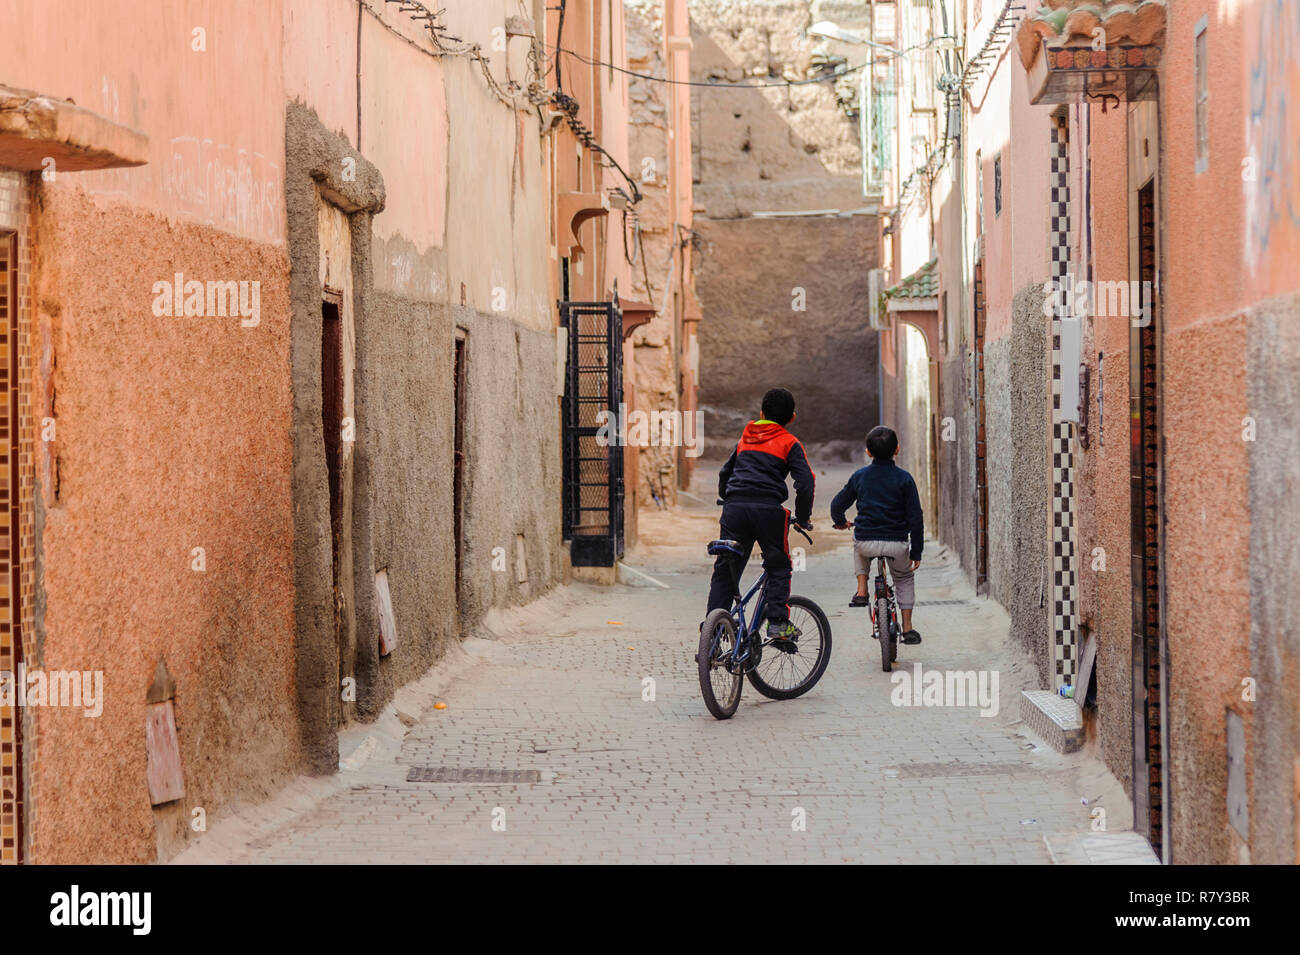 05-03-15, Marrakesch, Marokko. Zwei Jungen spielen auf ihre Fahrräder in der alten, alten Medina Teil der Stadt. Foto: © Simon Grosset Stockfoto